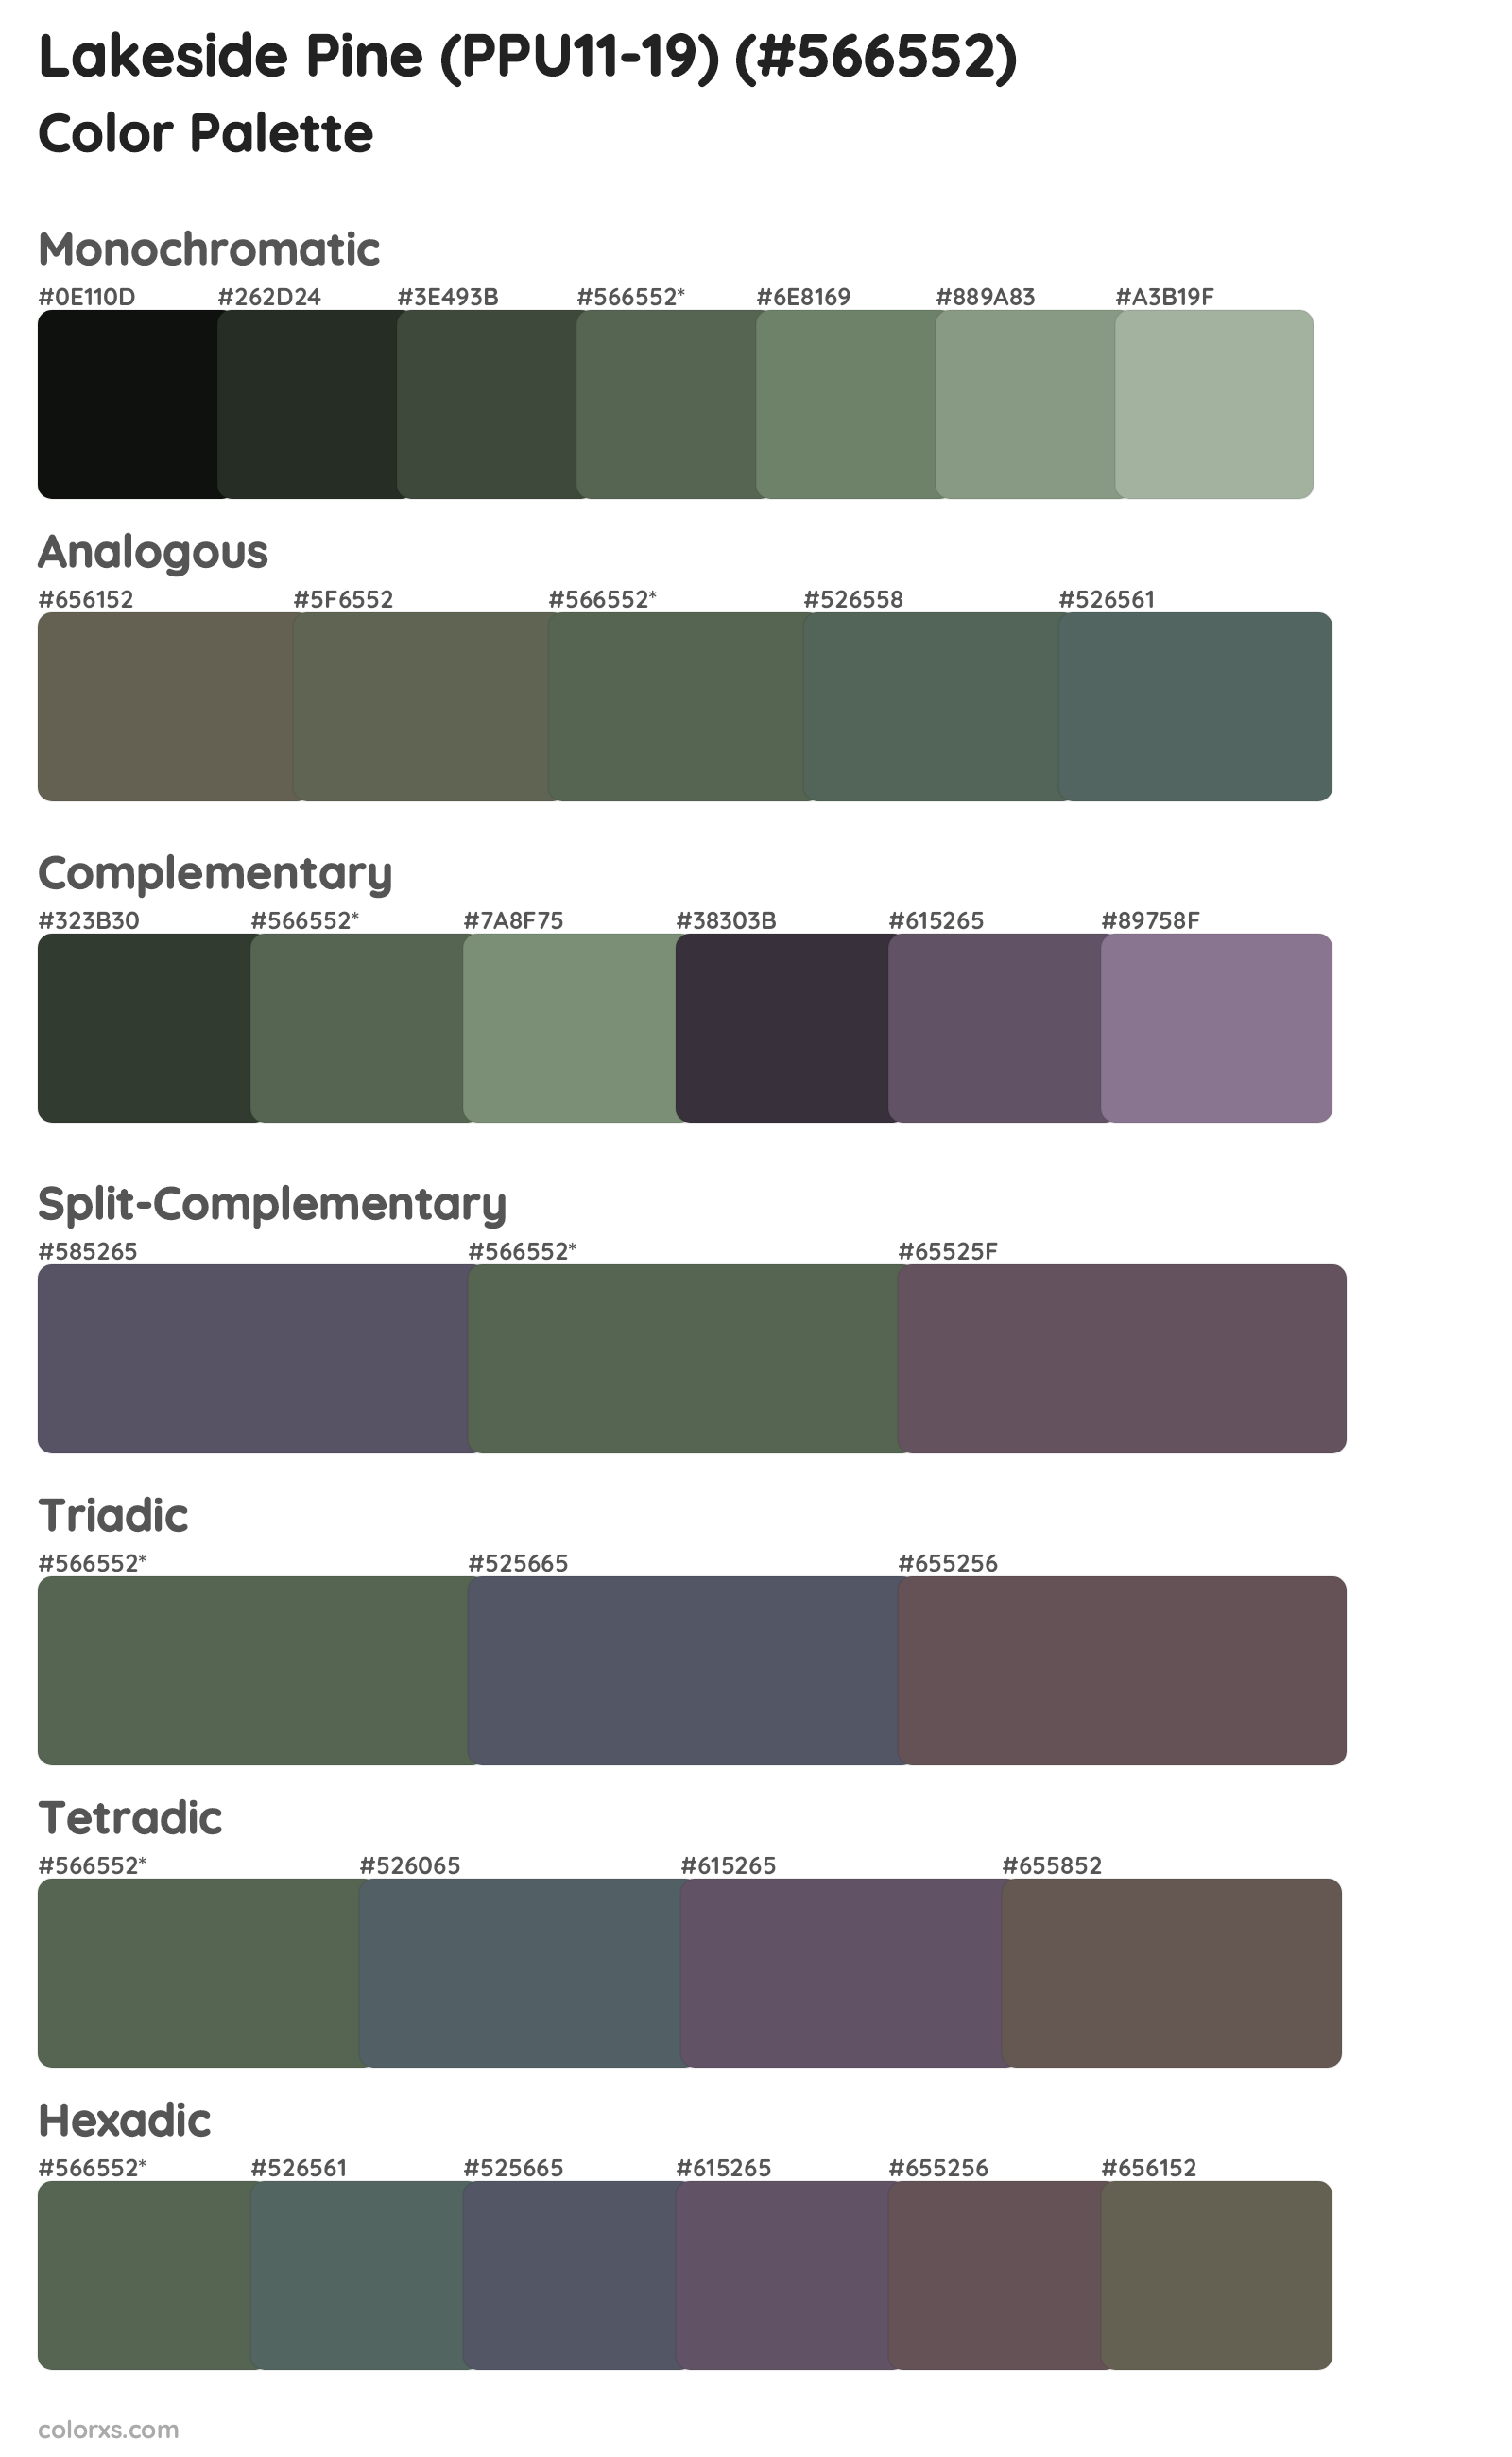 Lakeside Pine (PPU11-19) Color Scheme Palettes